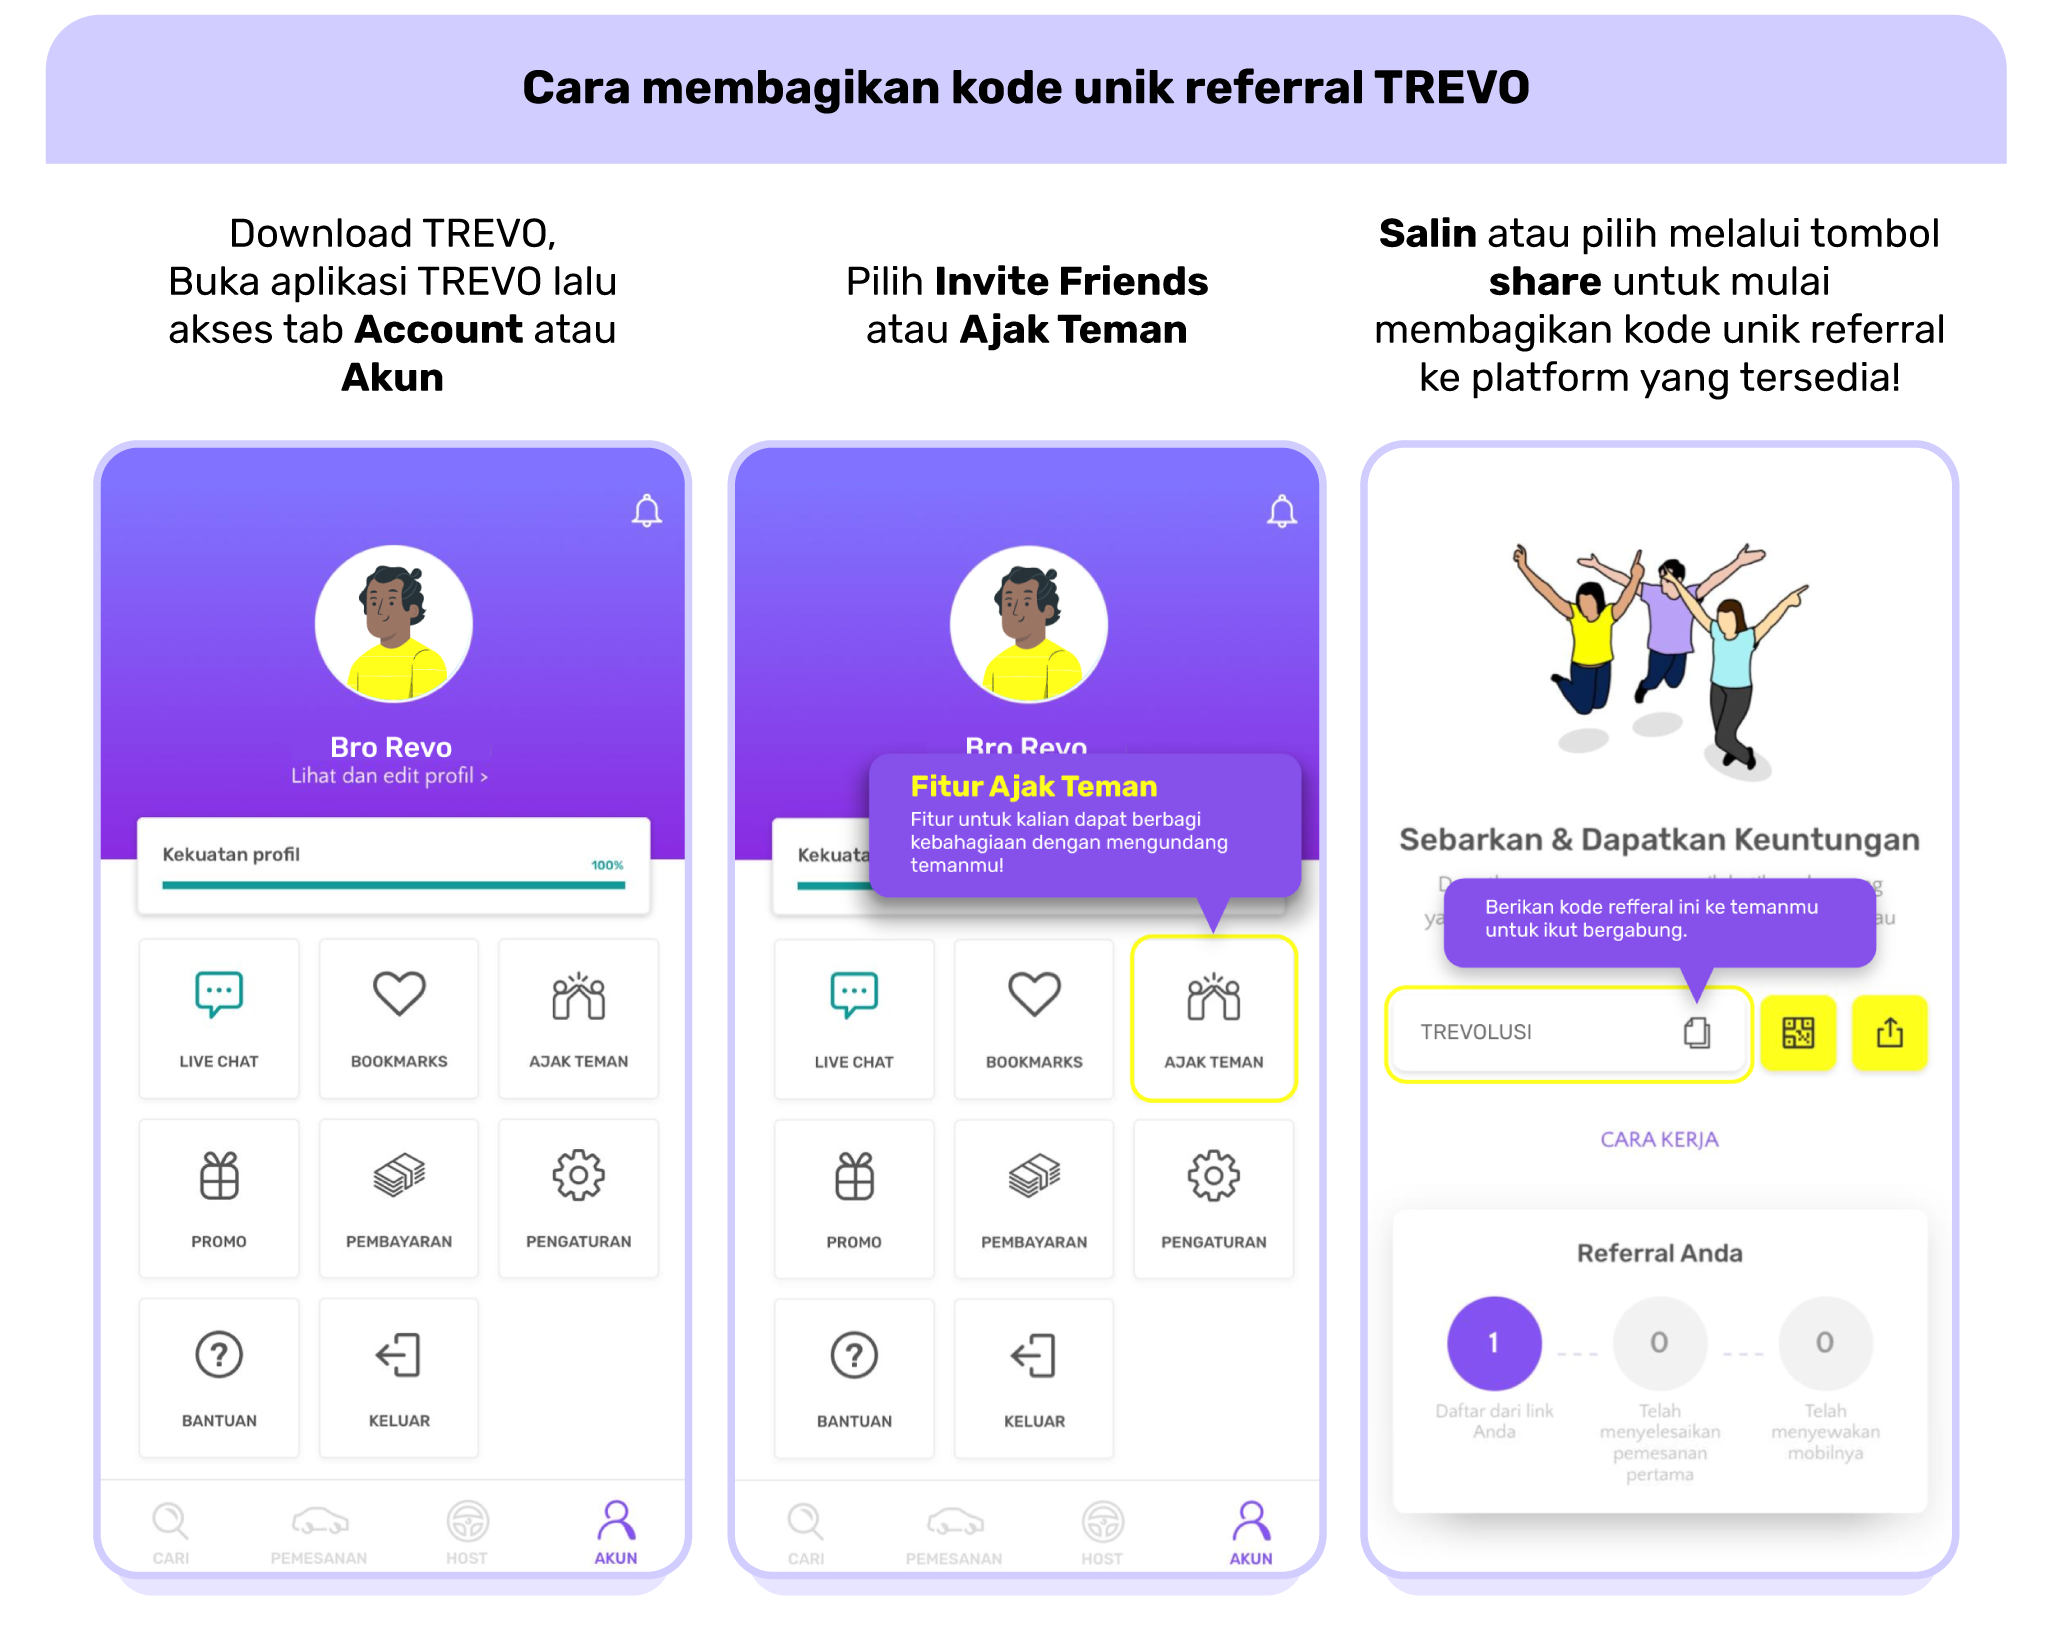 Cara membagikan kode unik referral TREVO